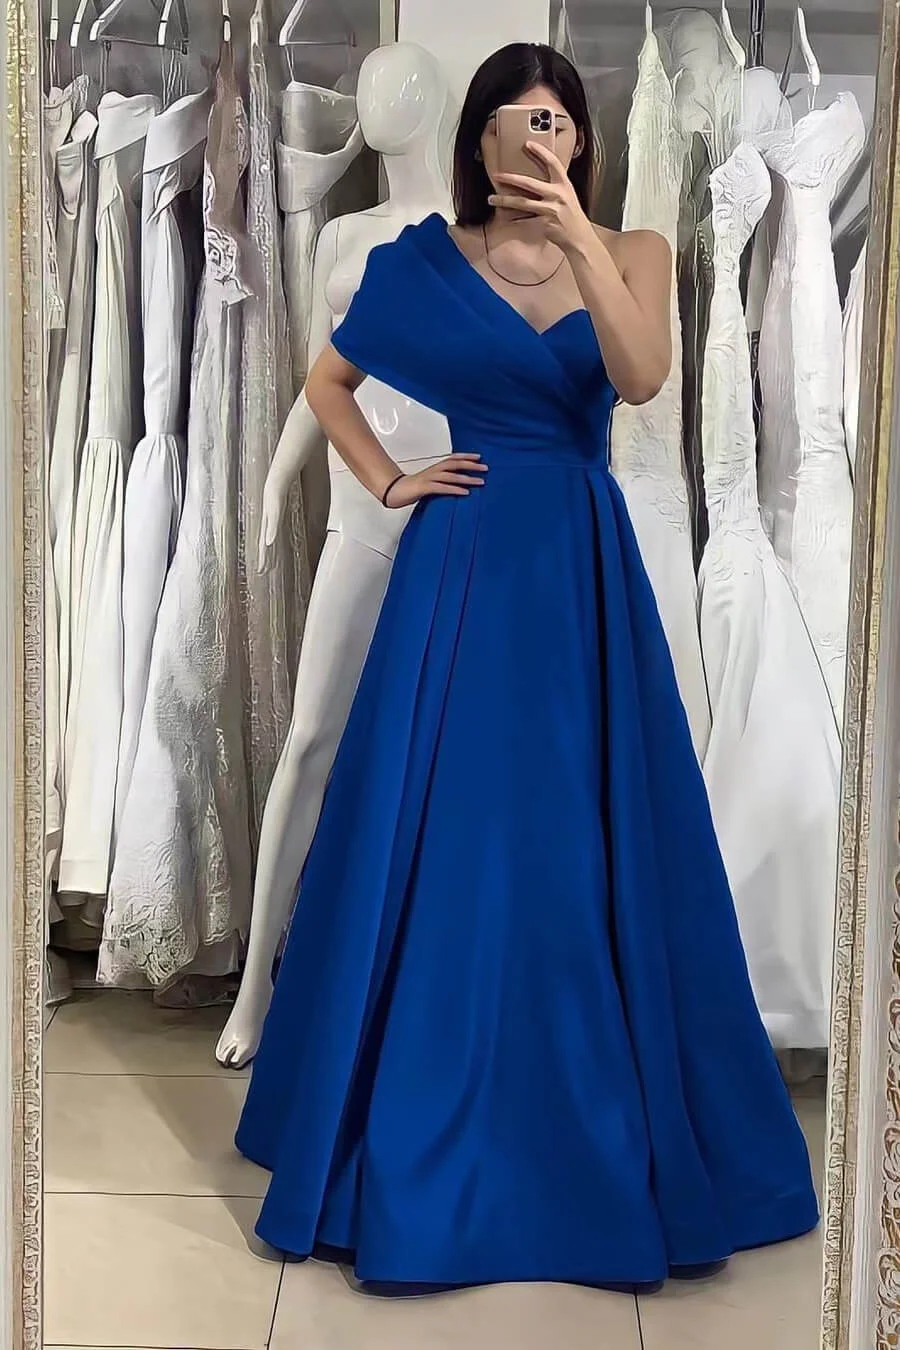 Miabel One Shoulder Elegant Sweetheart Evening Dress With Off-The-Shoulder Online Royal Blue